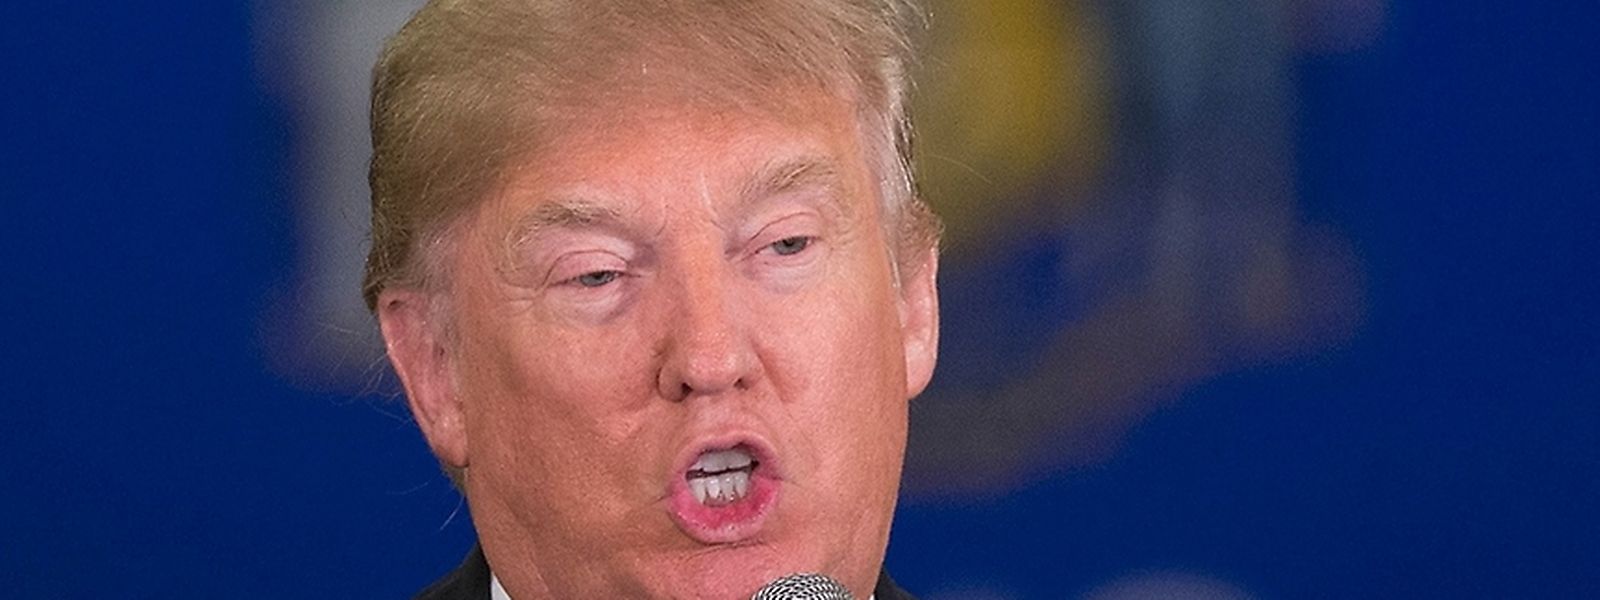 Erneut schockiert Donald Trump die USA mit seinen Äußerungen.